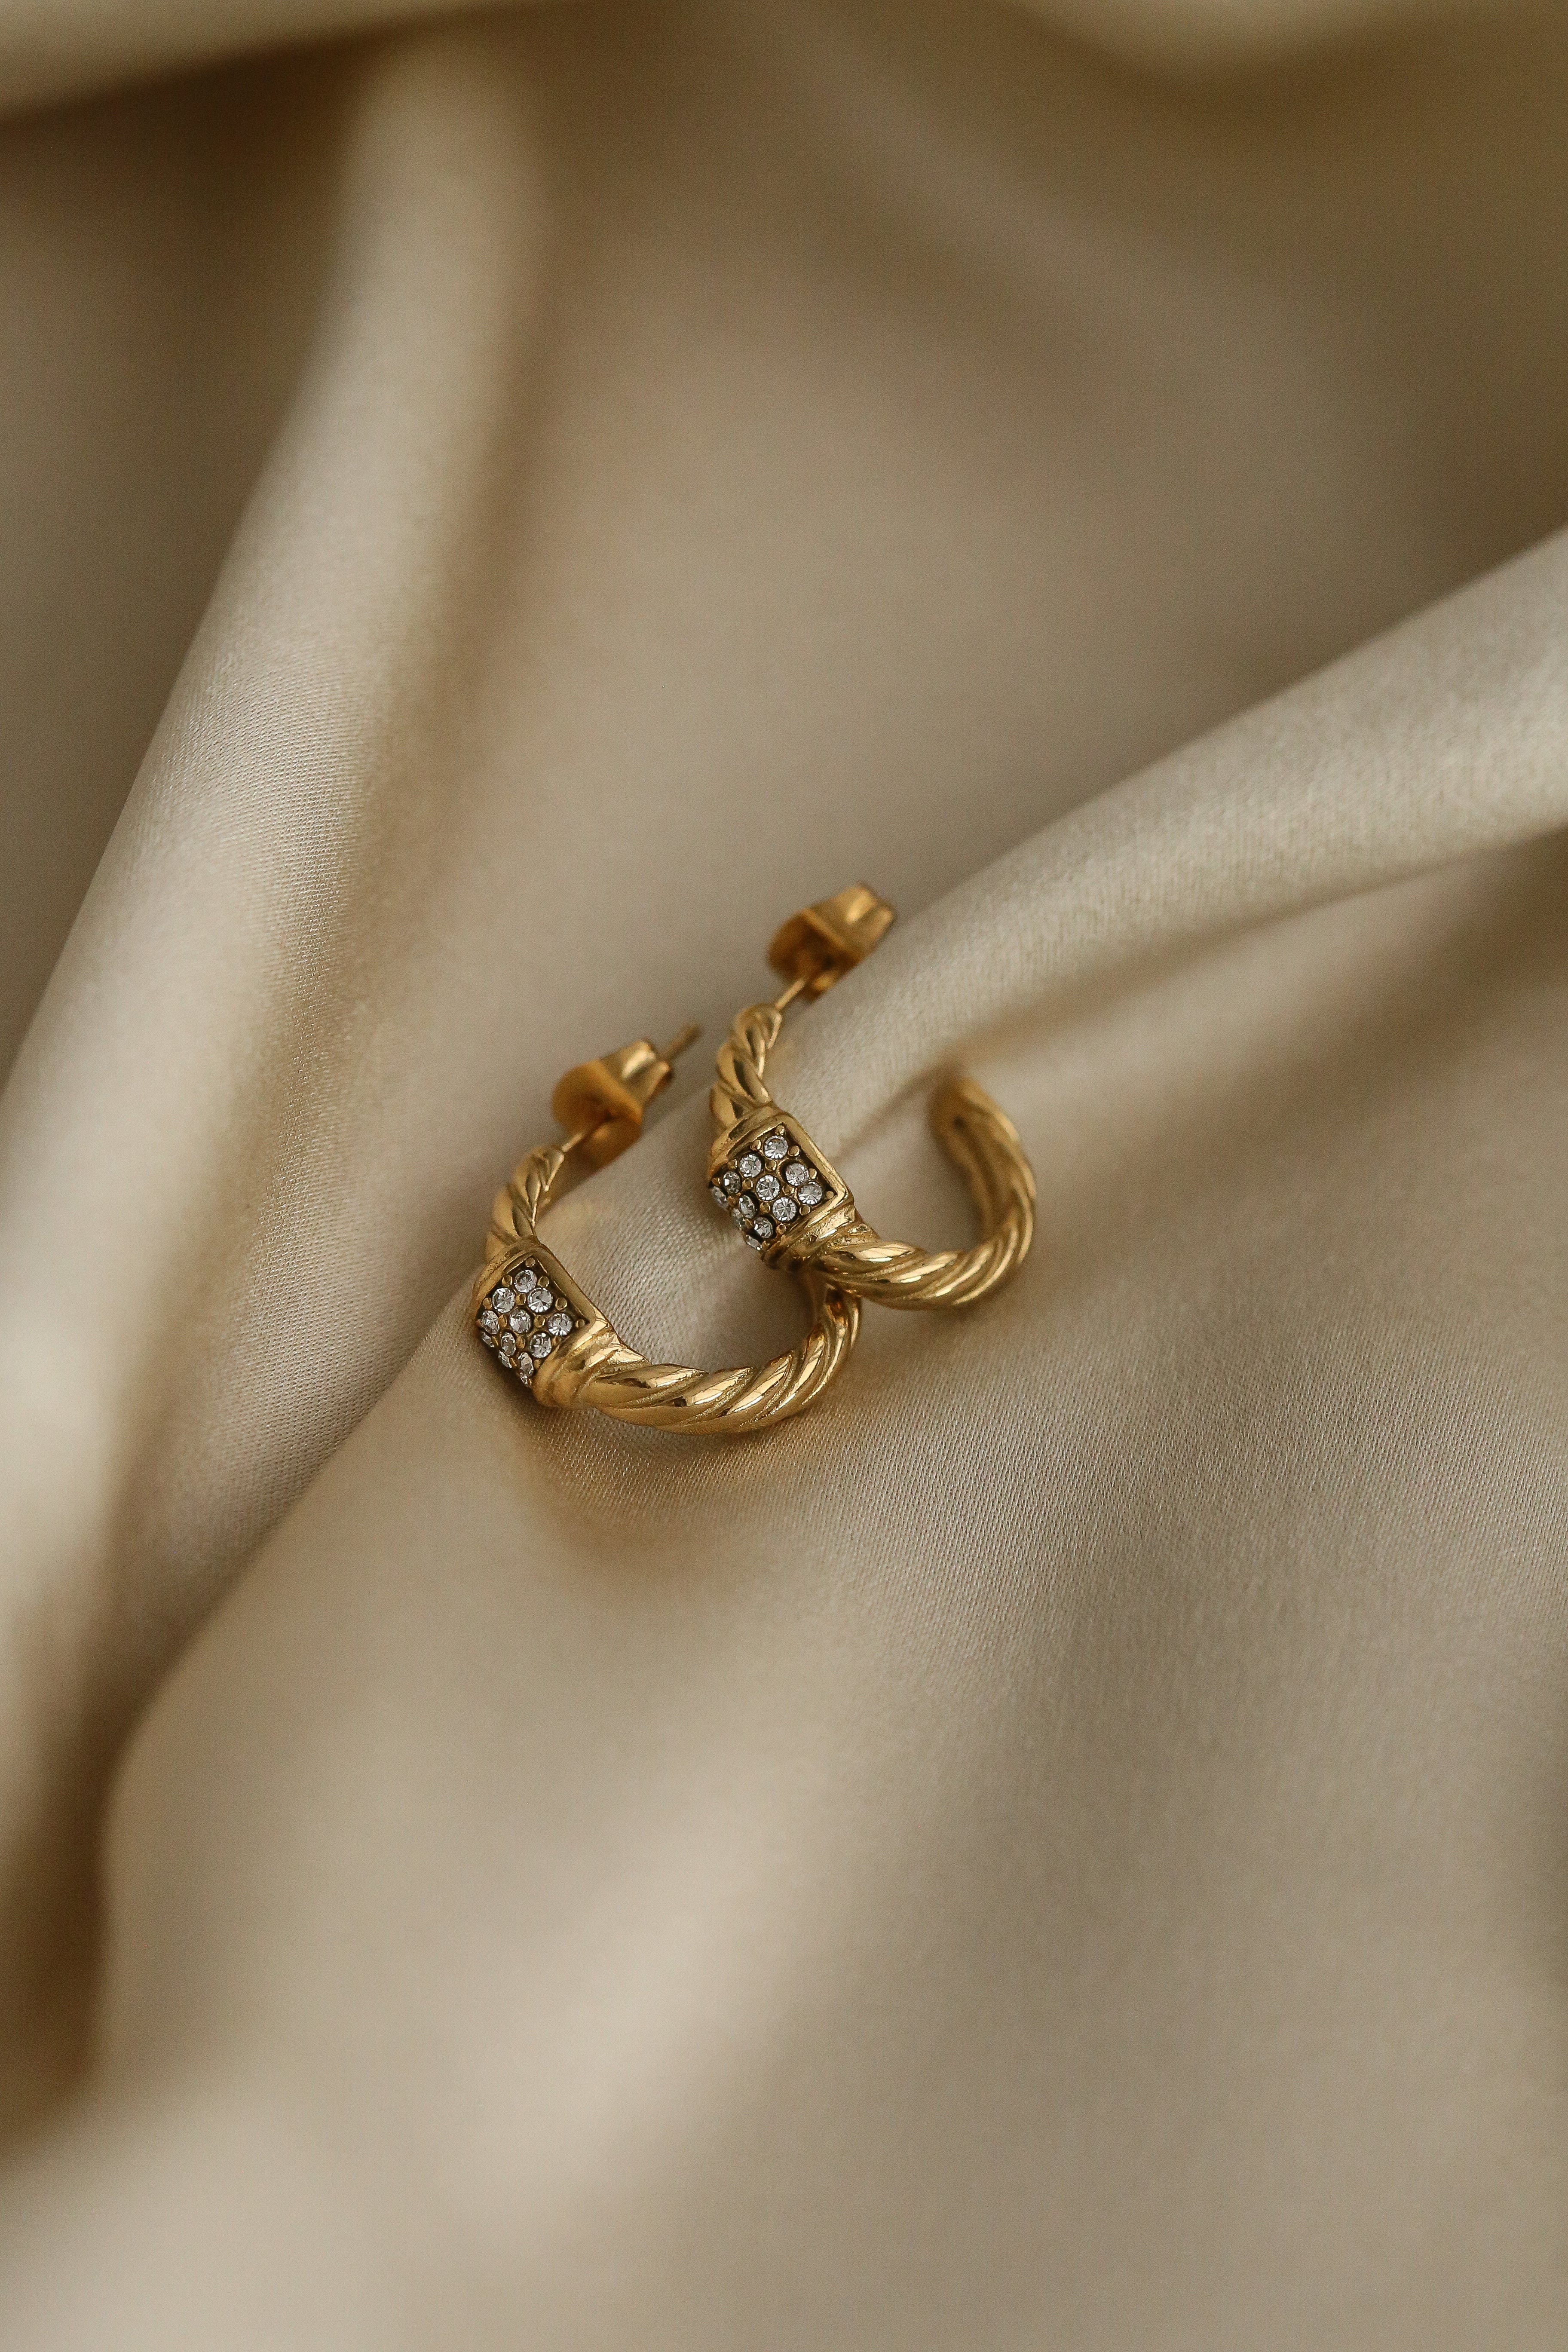 Josephine Hoop Earrings - Boutique Minimaliste has waterproof, durable, elegant and vintage inspired jewelry